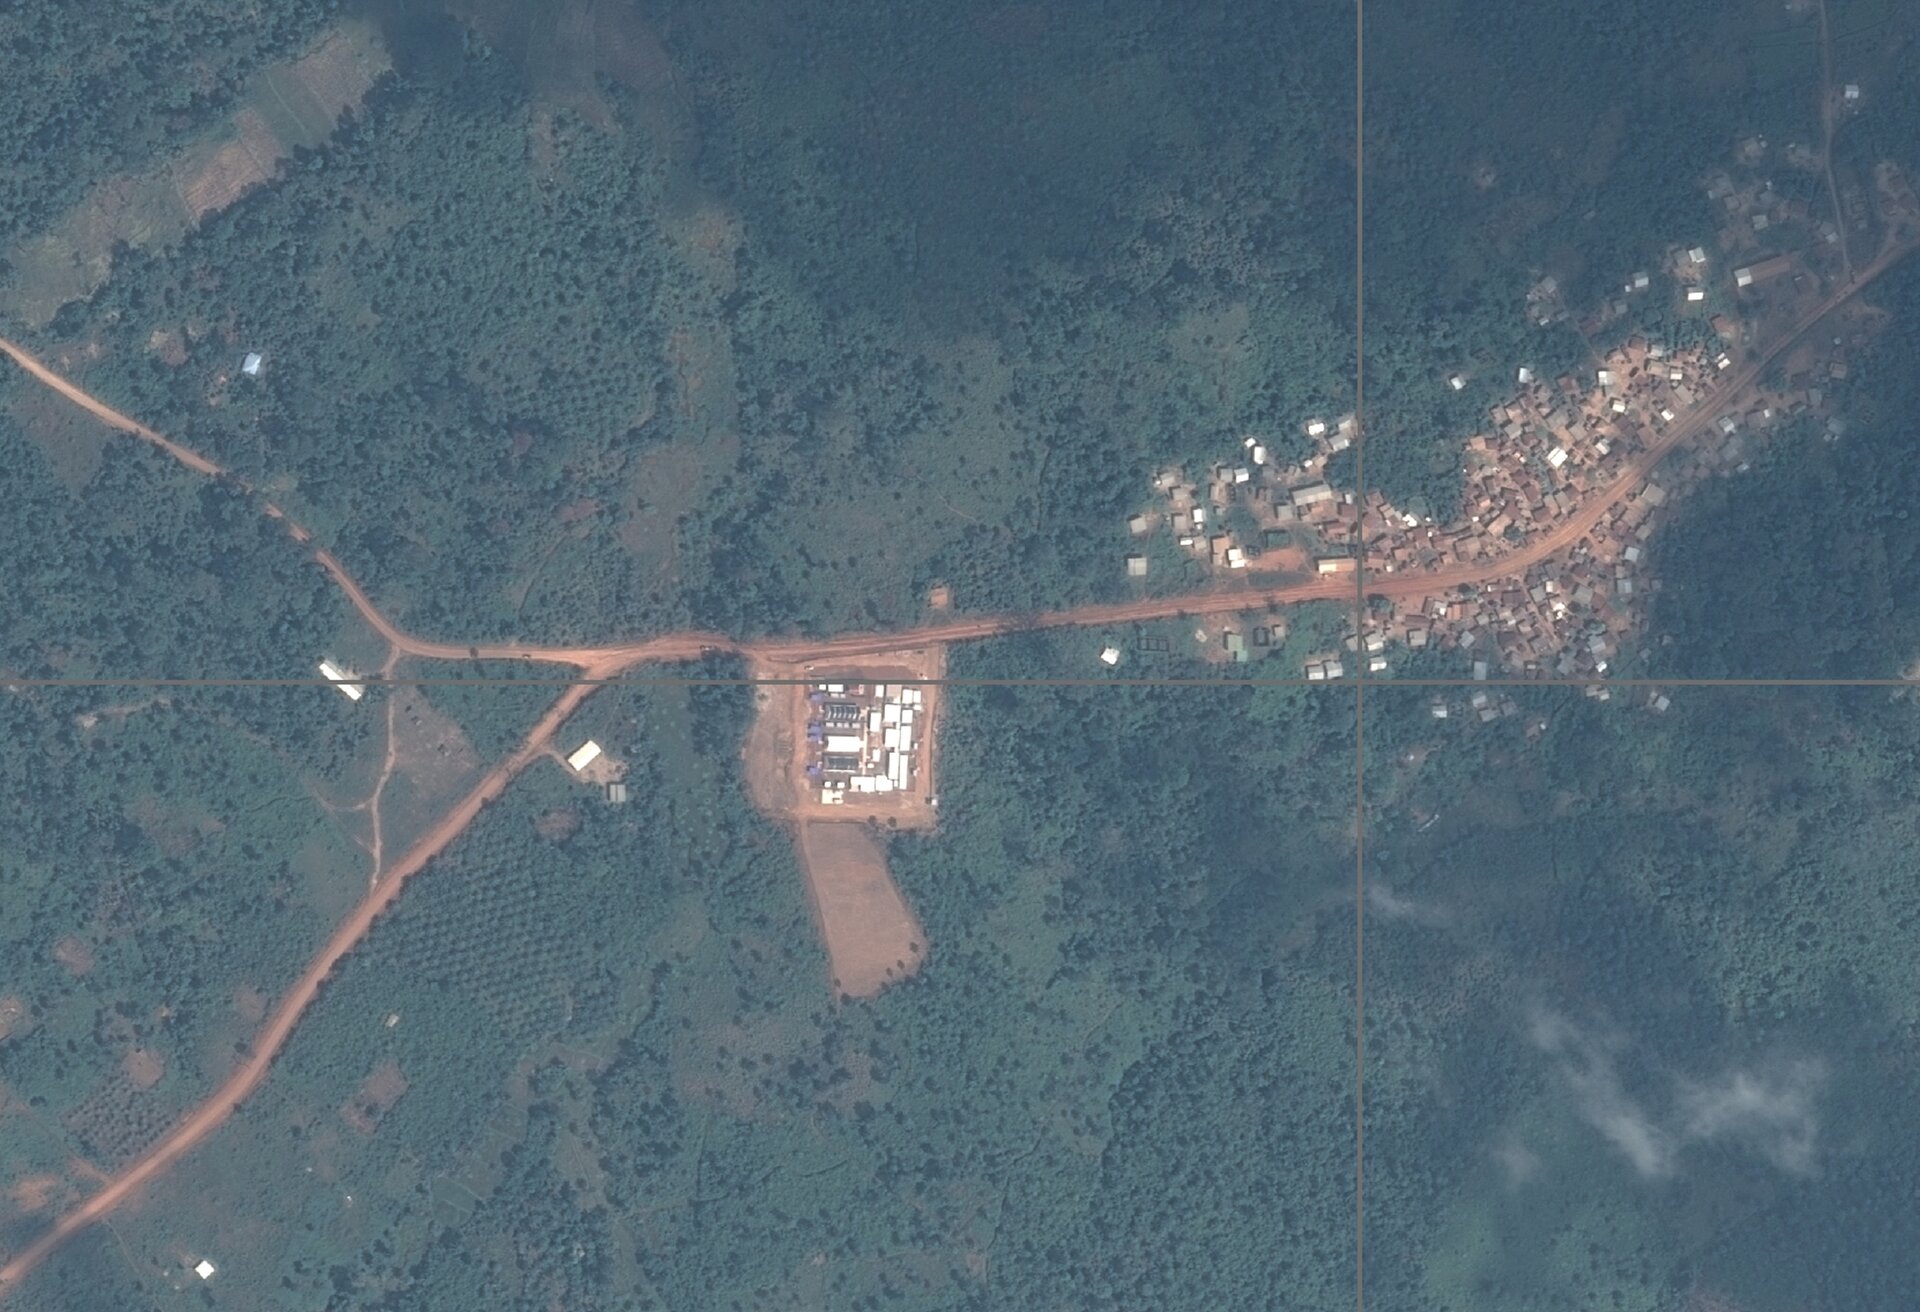 Using satellite images